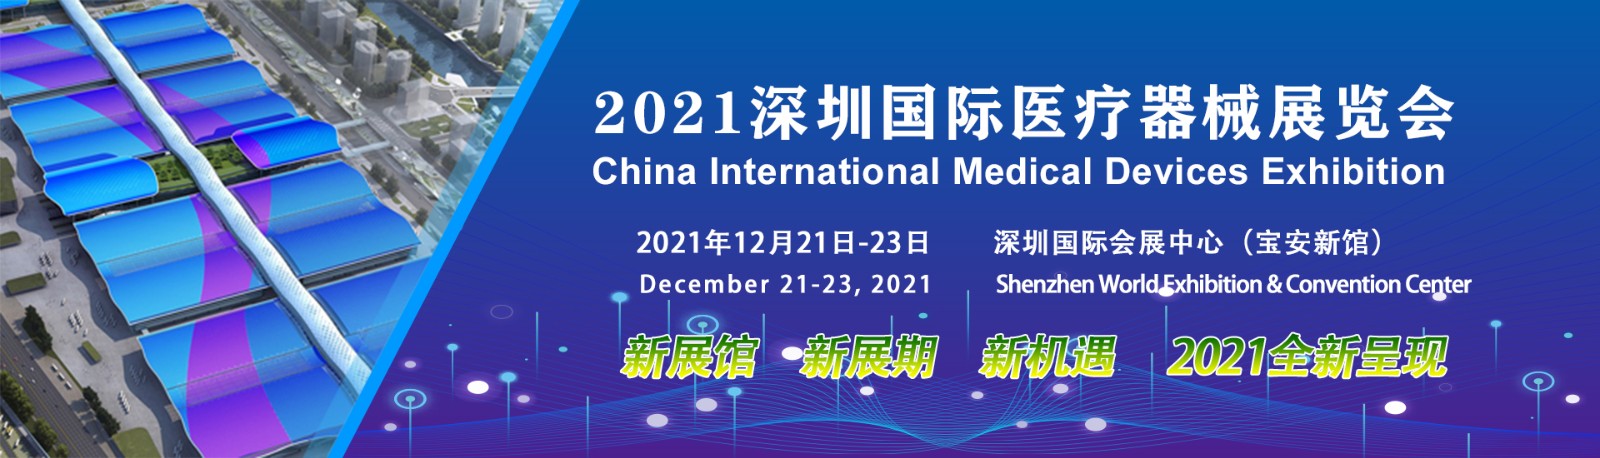 2021中国医疗器械秋季博览会与2021深圳国际医疗器械展览会